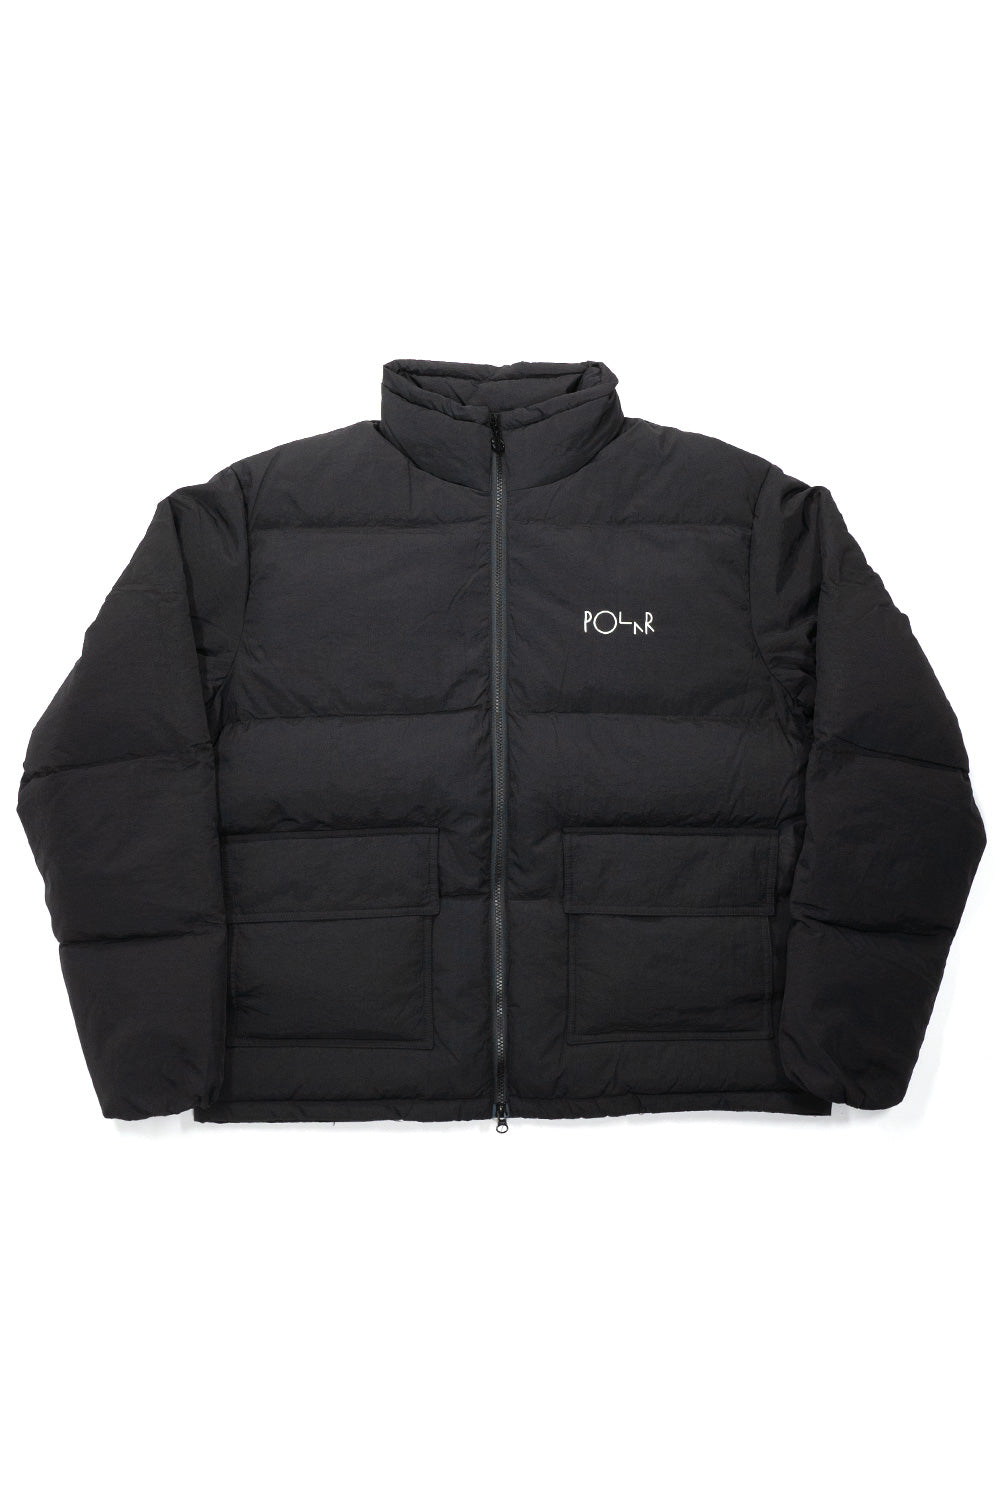 Polar Skate Co. Pocket Puffer Jacket Black - BONKERS